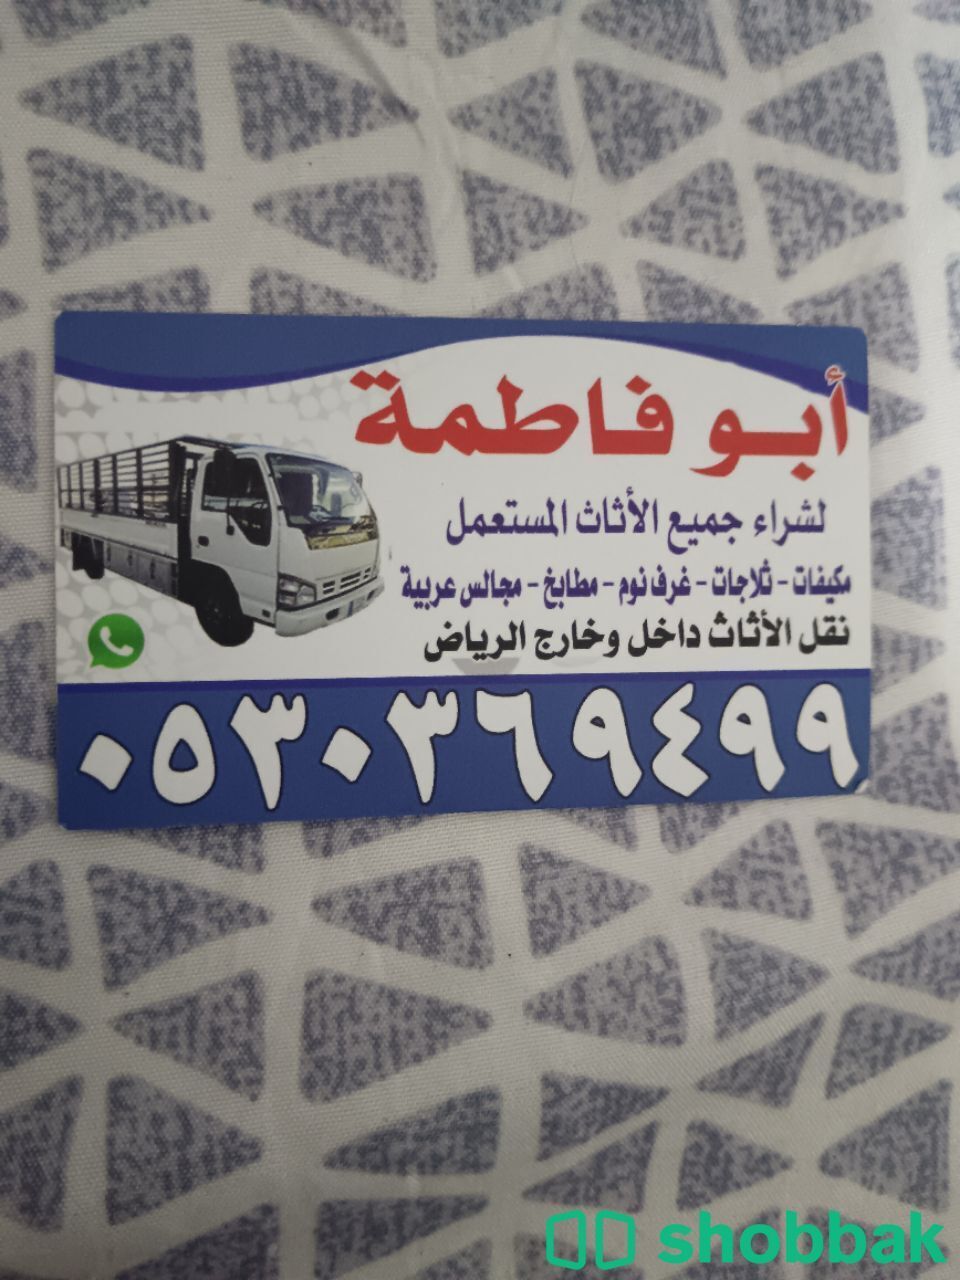 شراء مكيفات مستعمله حي ظهرة لبن 0530369499 Shobbak Saudi Arabia